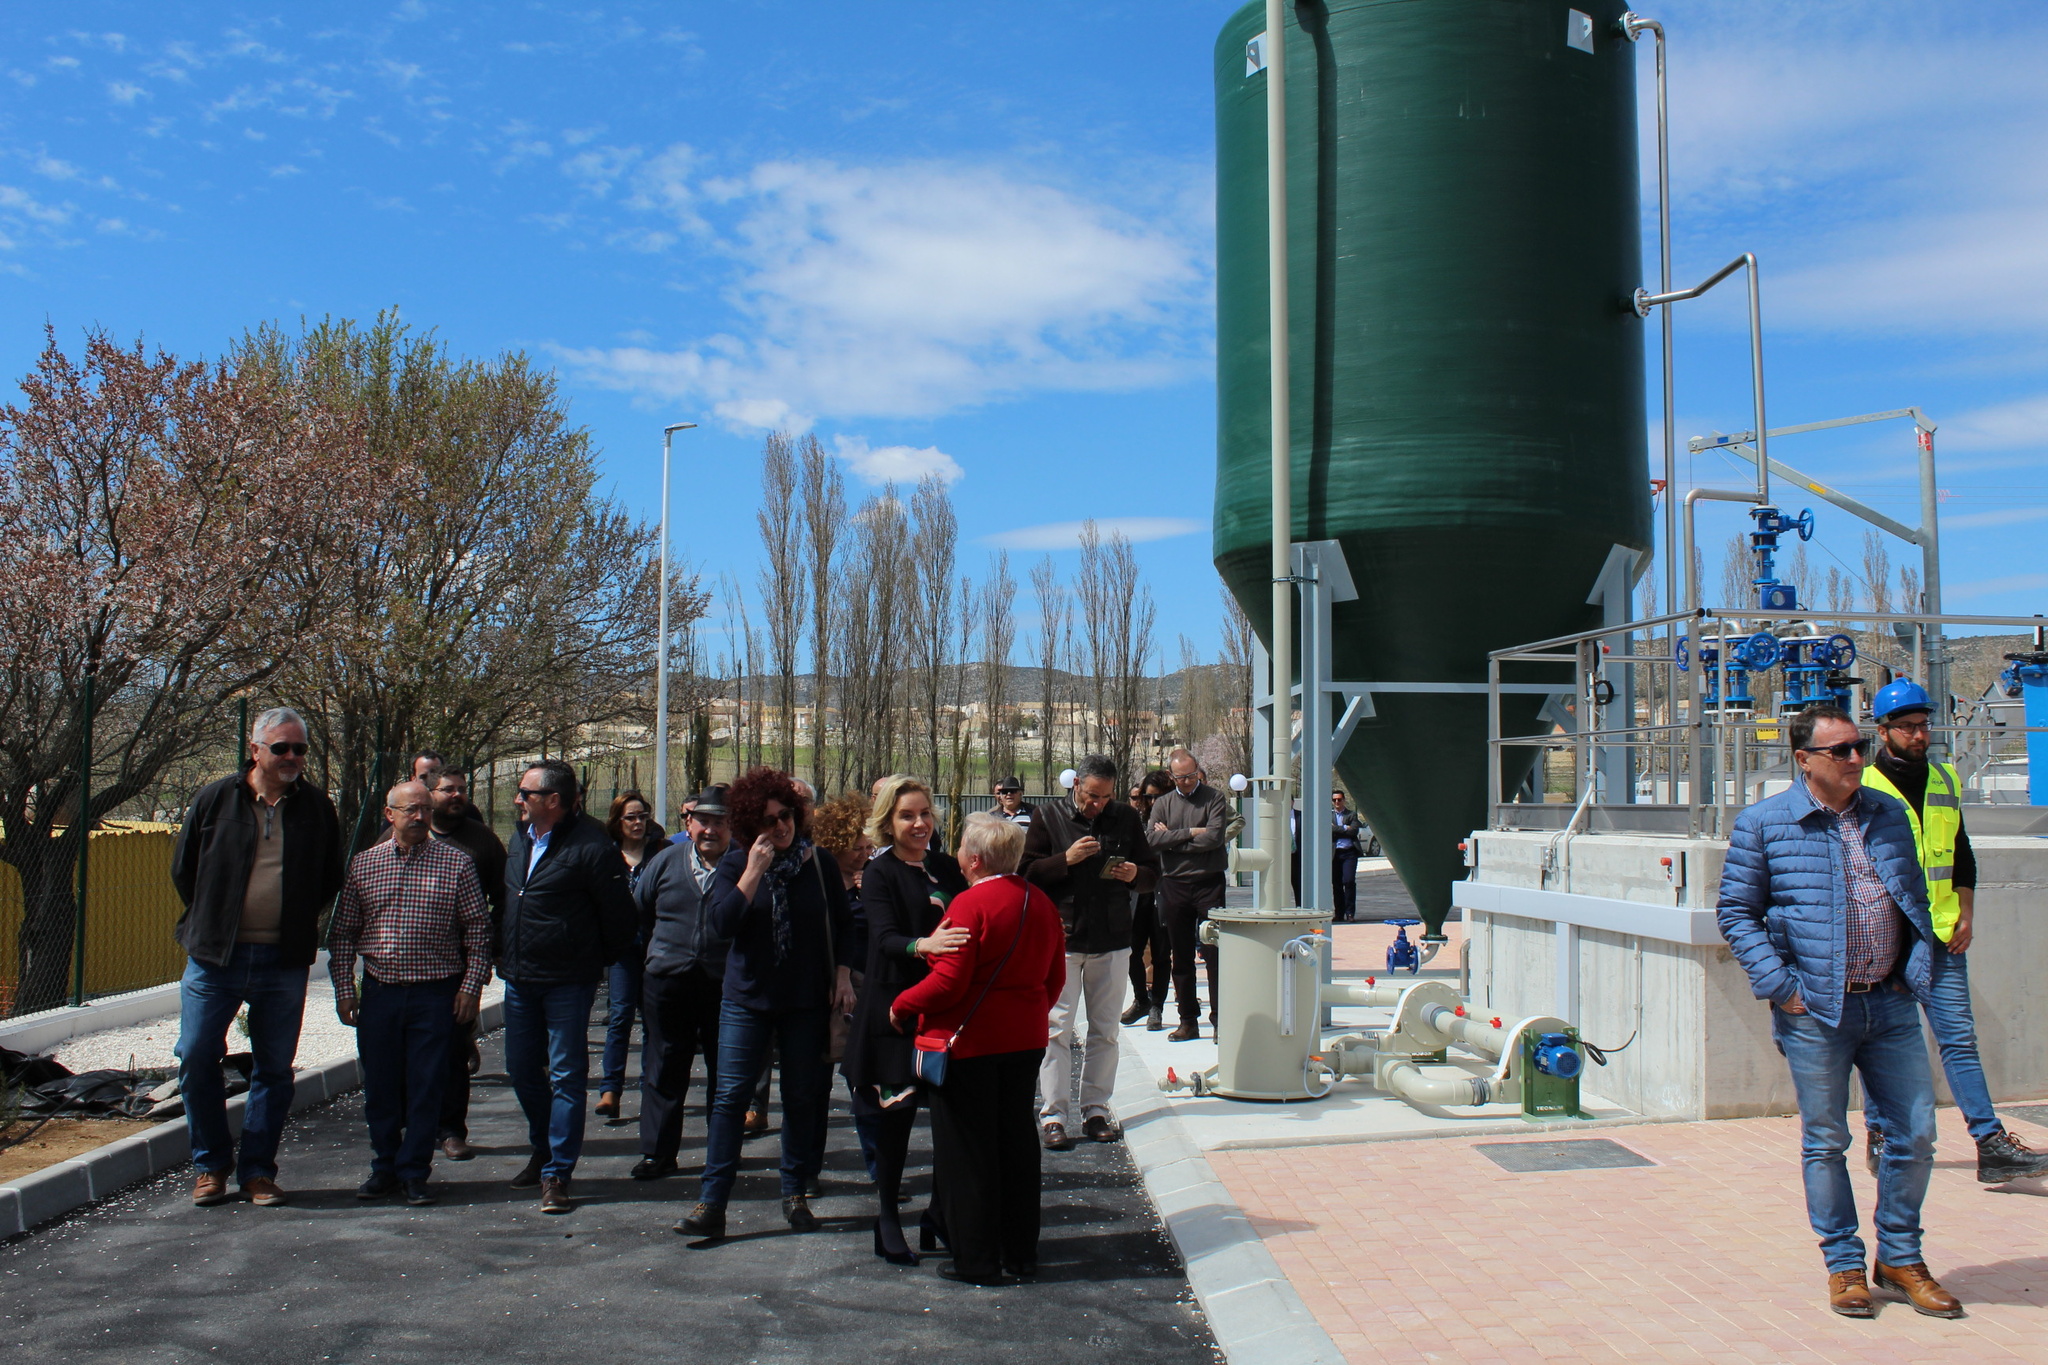 La consejera, acompañada por la alcaldesa de Moratalla, la pedánea del El Sabinar, técnicos de la Consejería y vecinos de la pedanía, inaugura la nueva estación depuradora